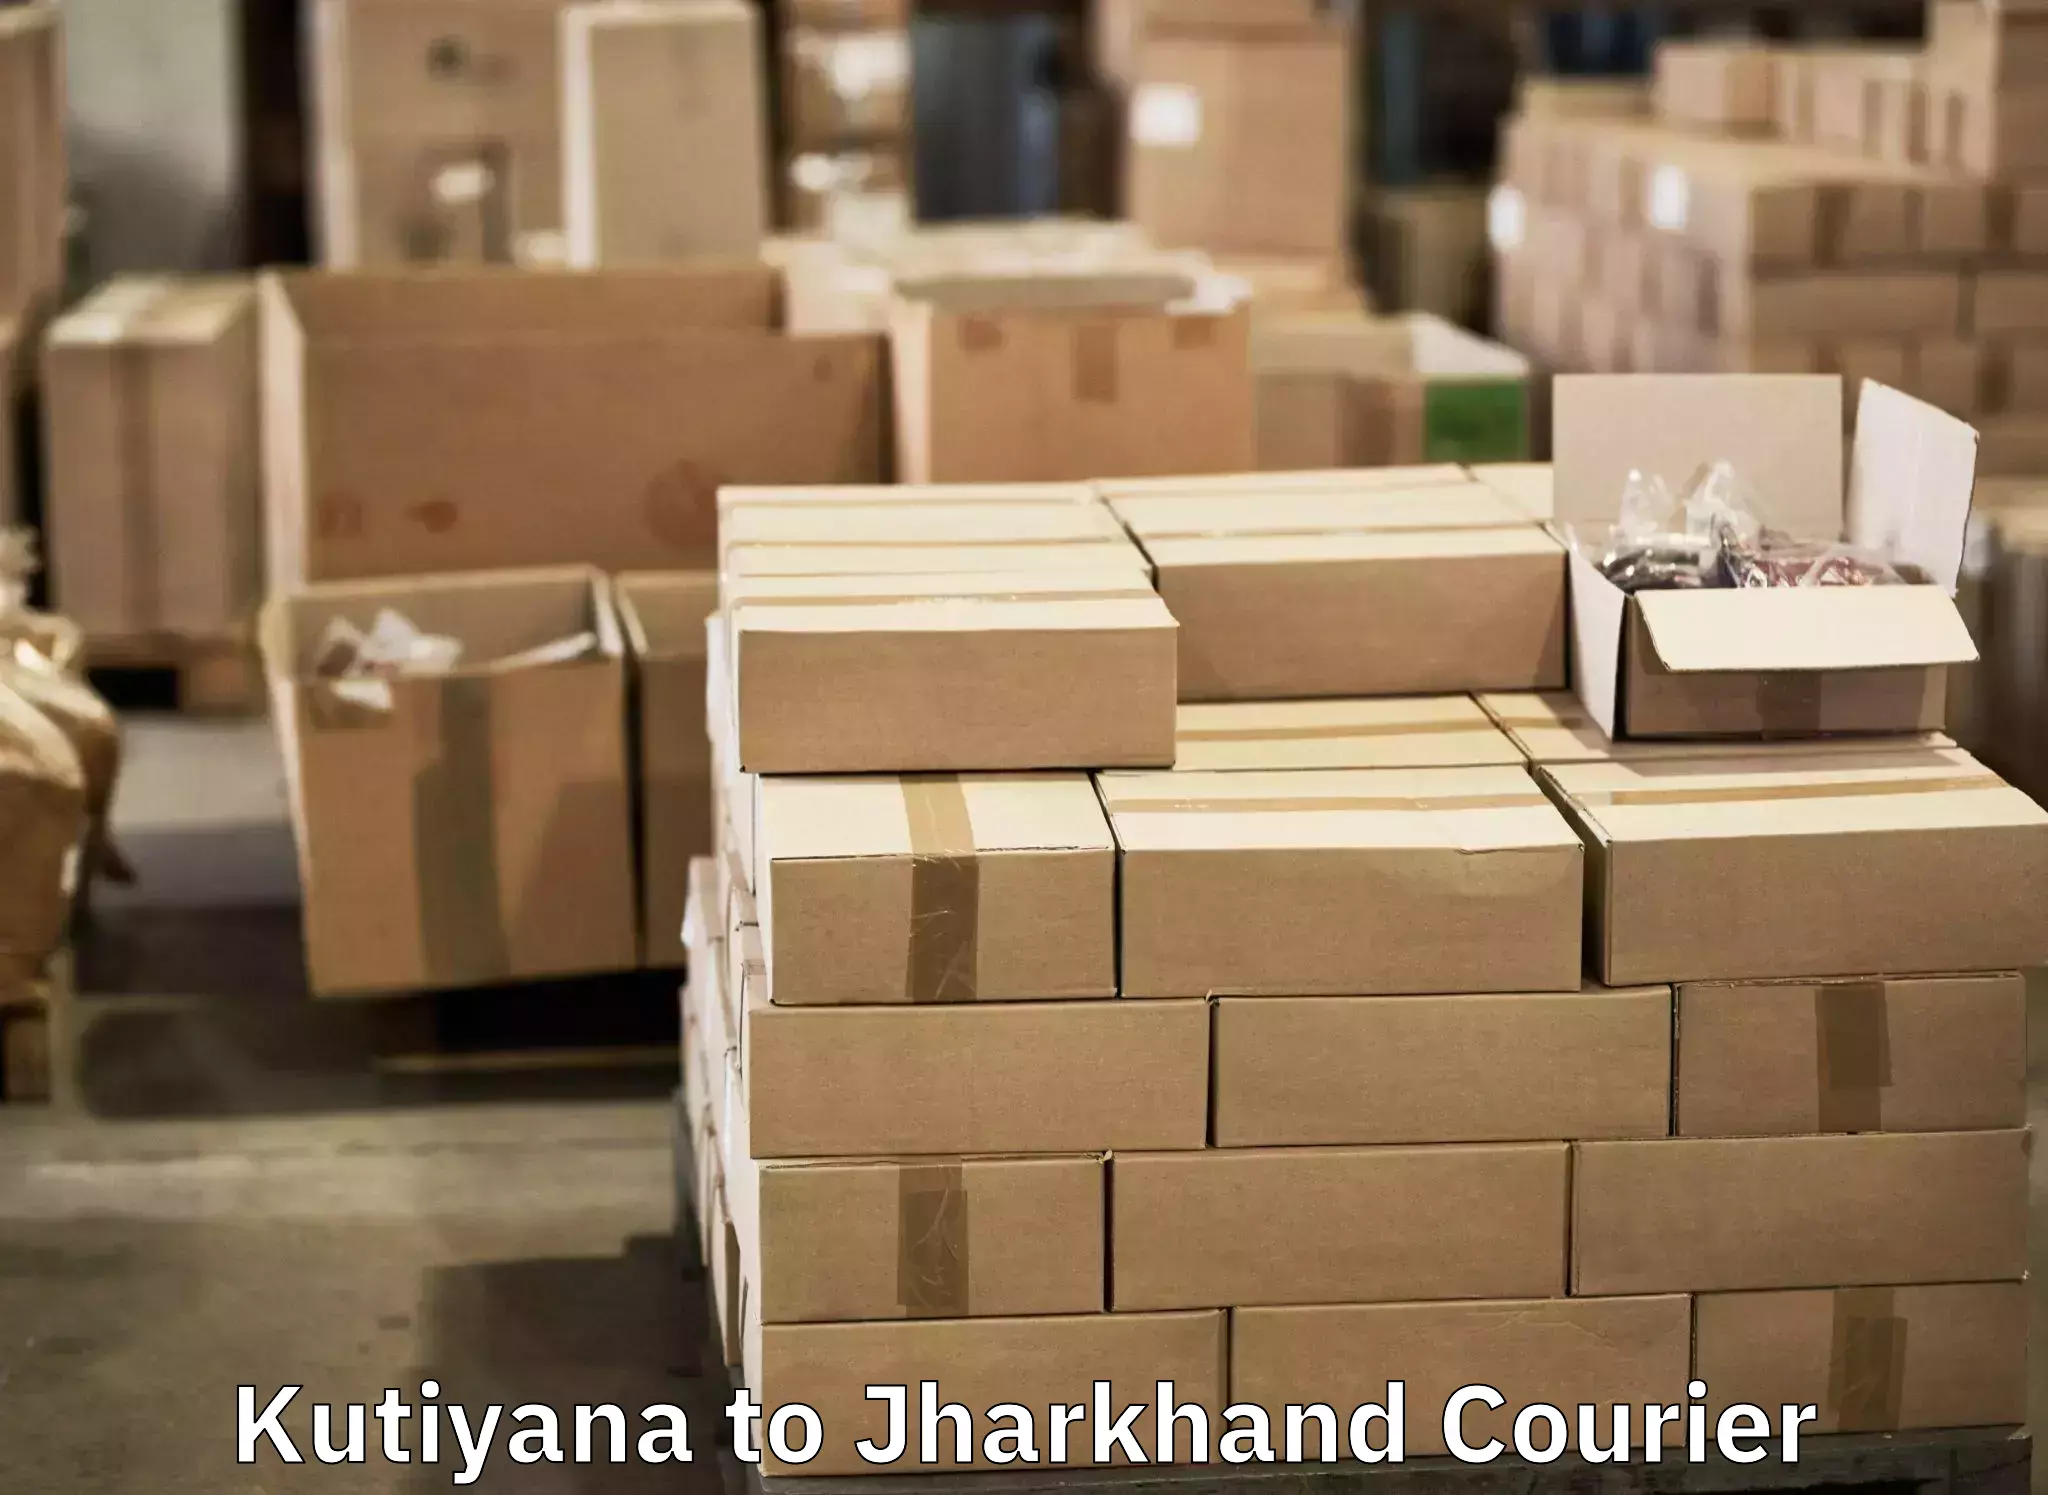 Baggage shipping experts Kutiyana to Jamshedpur